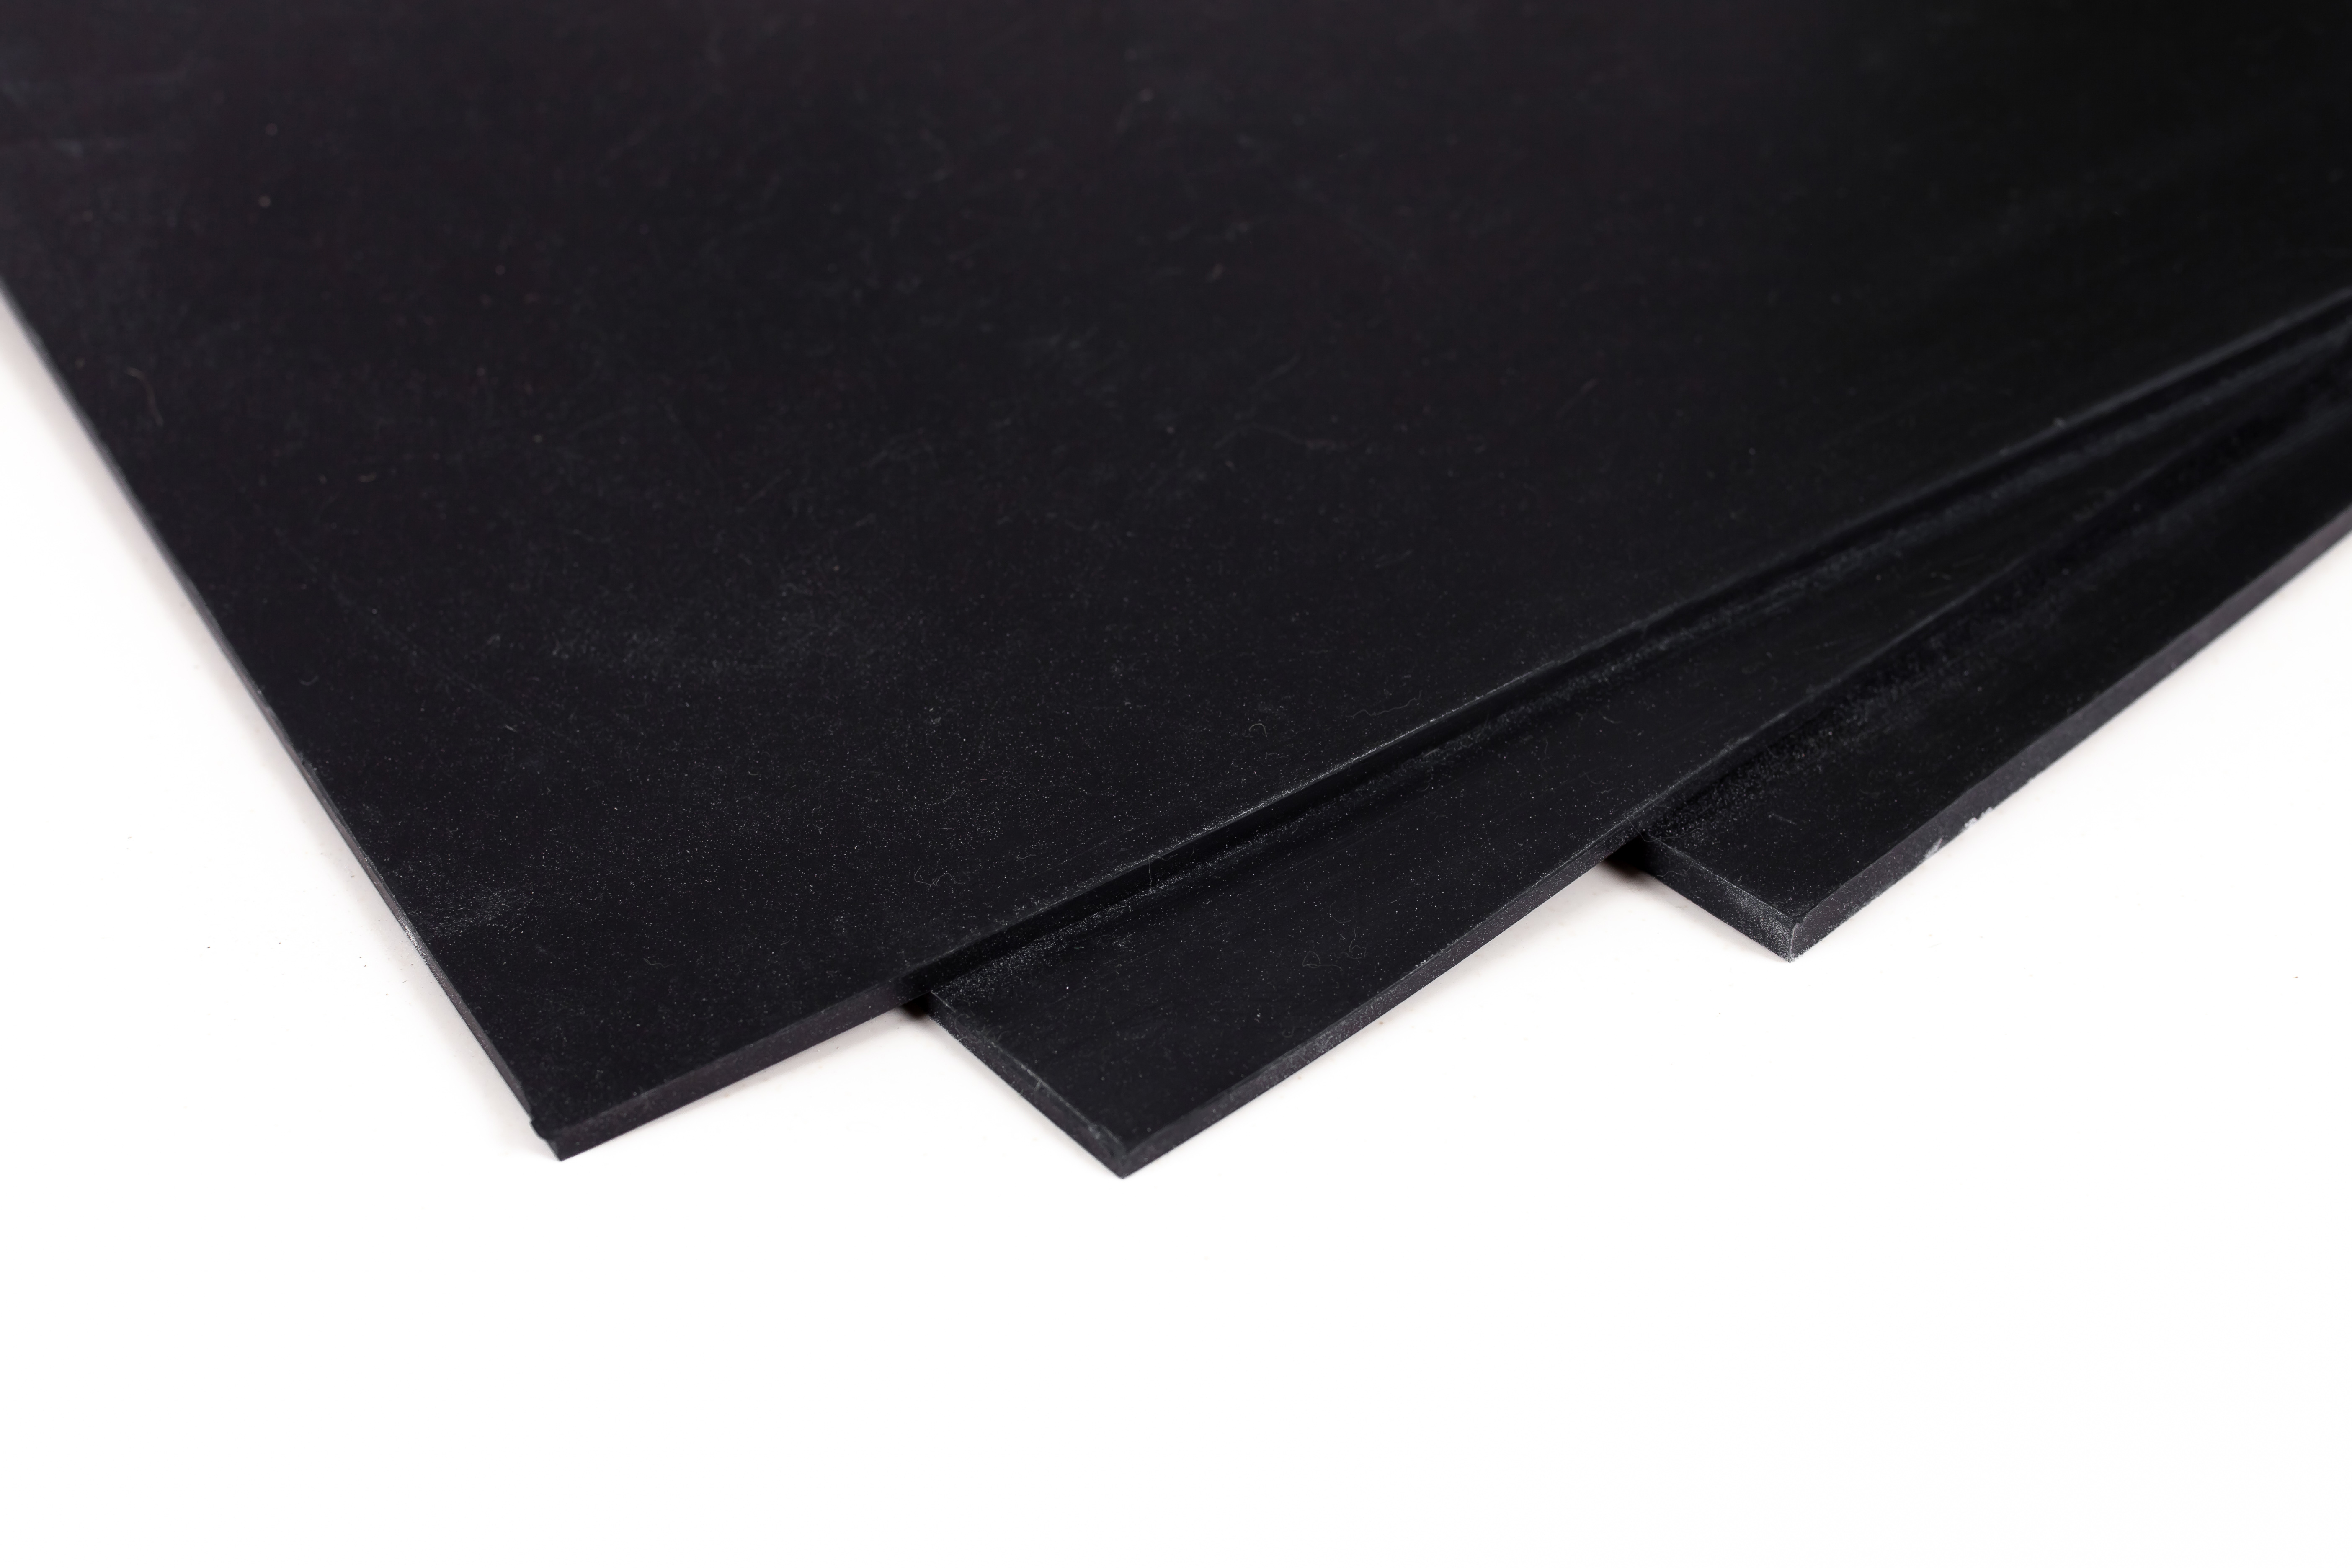 Пластина резиновая черная монолитная 4 мм размер 720х720 мм. подставка для телефона luazon складная регулируемая высота резиновая вставка черная